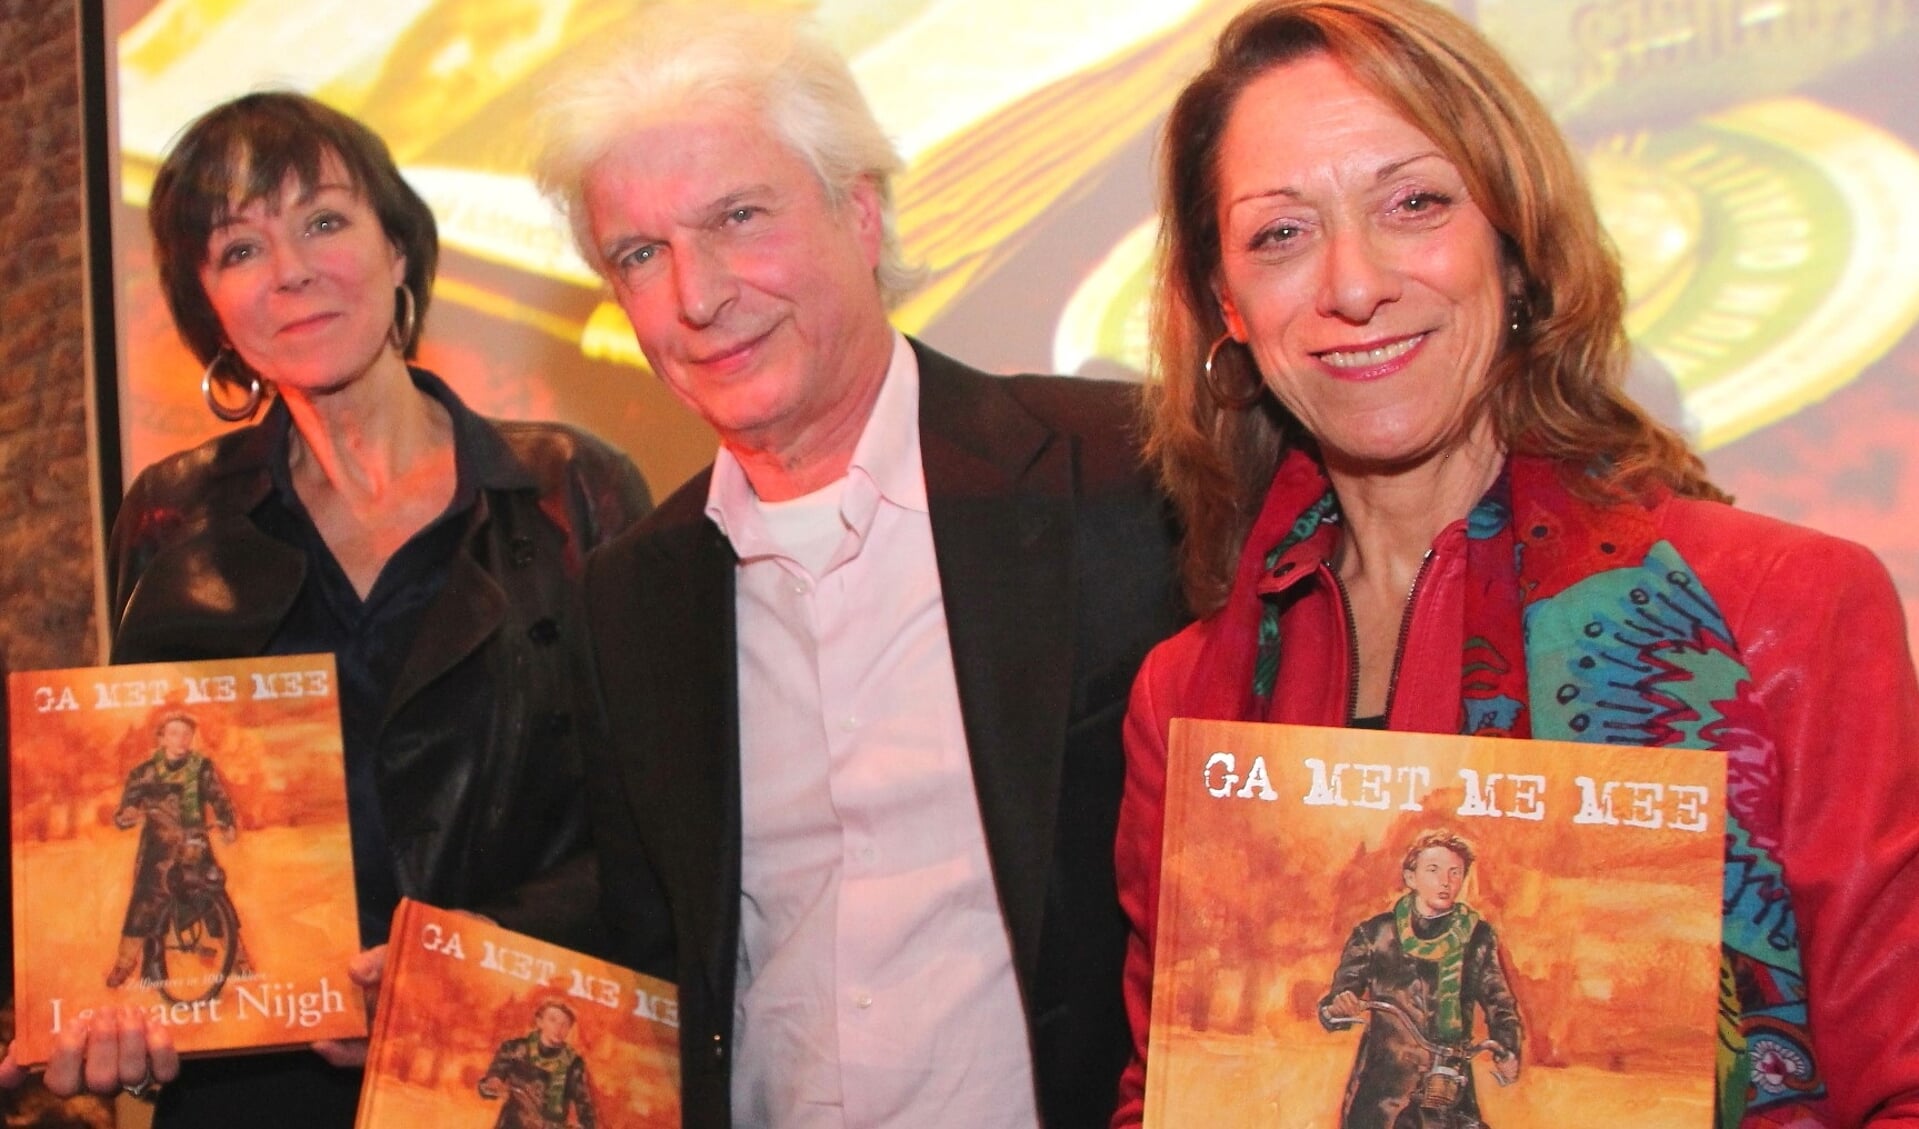 Foto uit 2017, Boudewijn de Groot bij de uitreiking van een boek over Lennaert Nijgh, links zangeres Josee Koning en rechts zijn vrouw Anja Bak.